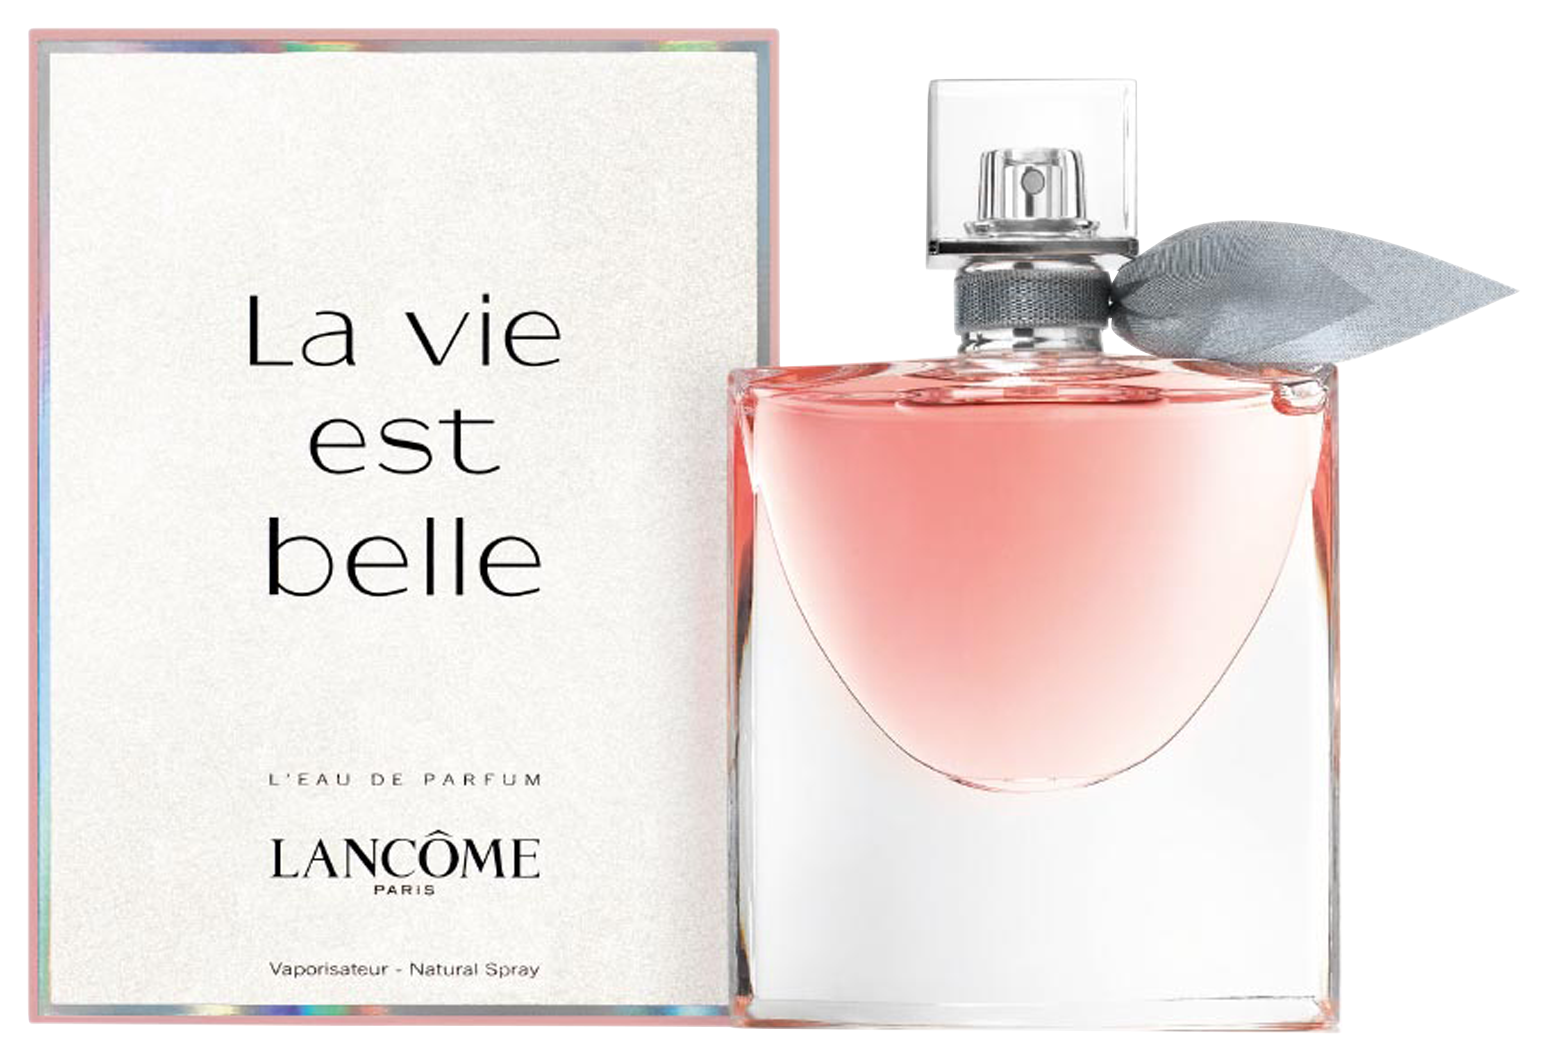 Lancôme La vie est belle Eau de Parfum 50 ml, refillable